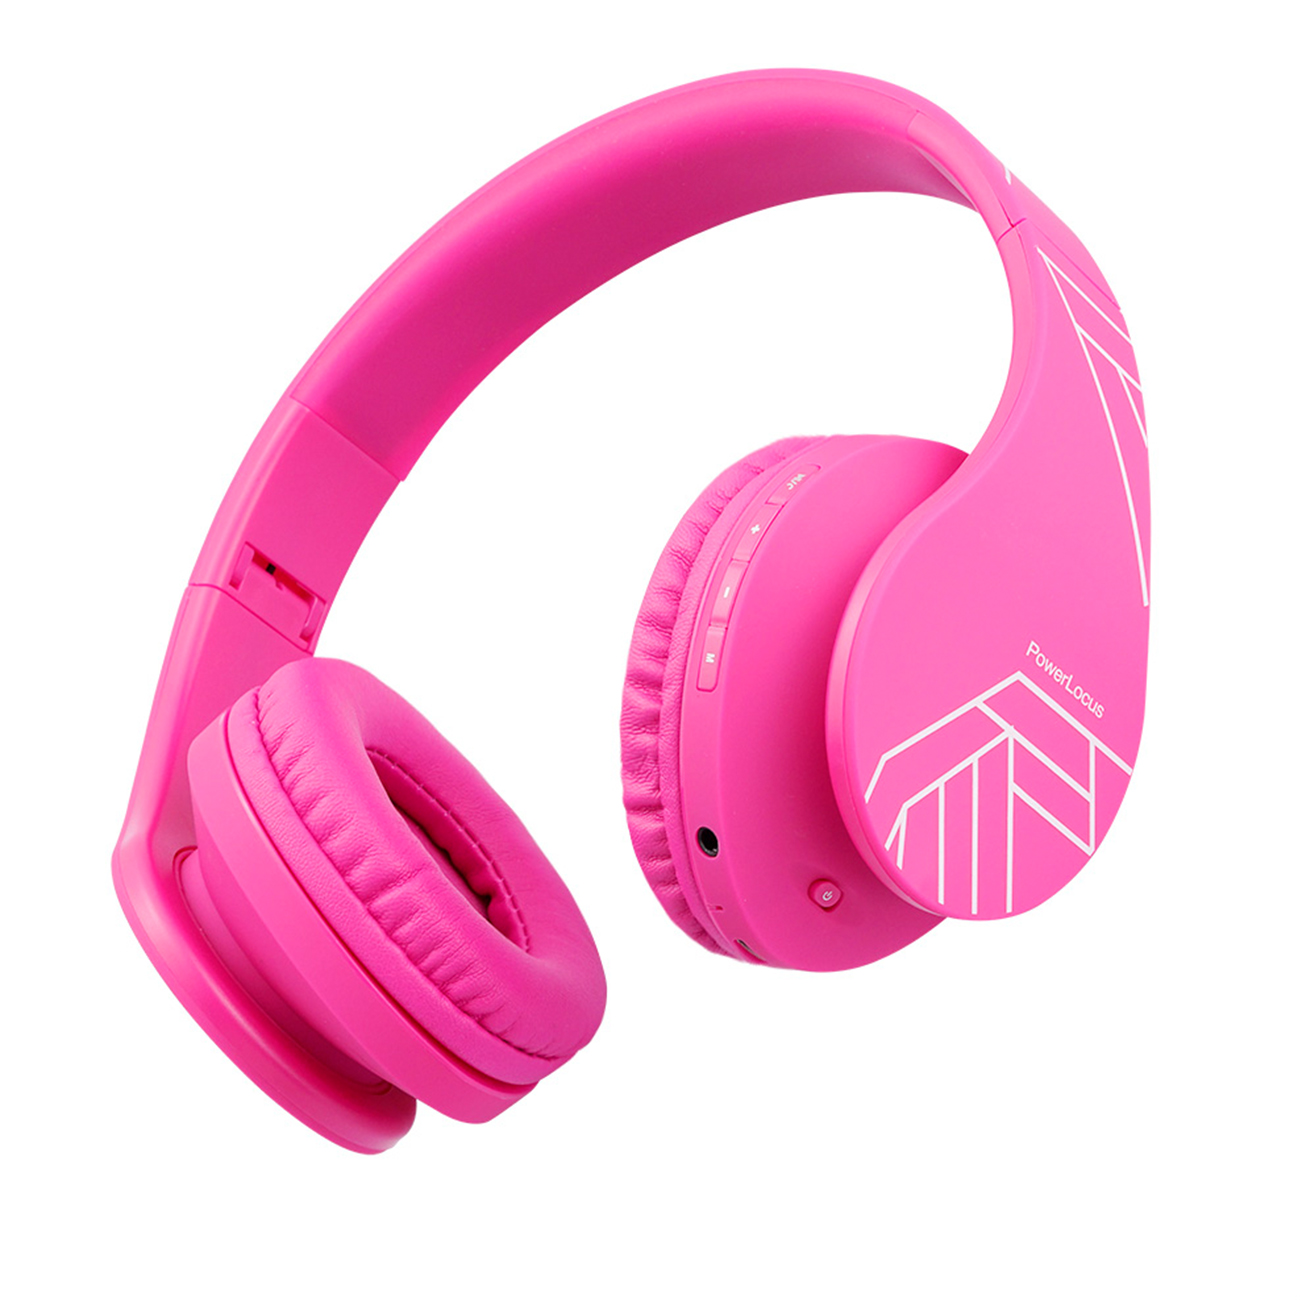 POWERLOCUS P2 für Kinder, Over-ear Rosa Kopfhörer Bluetooth